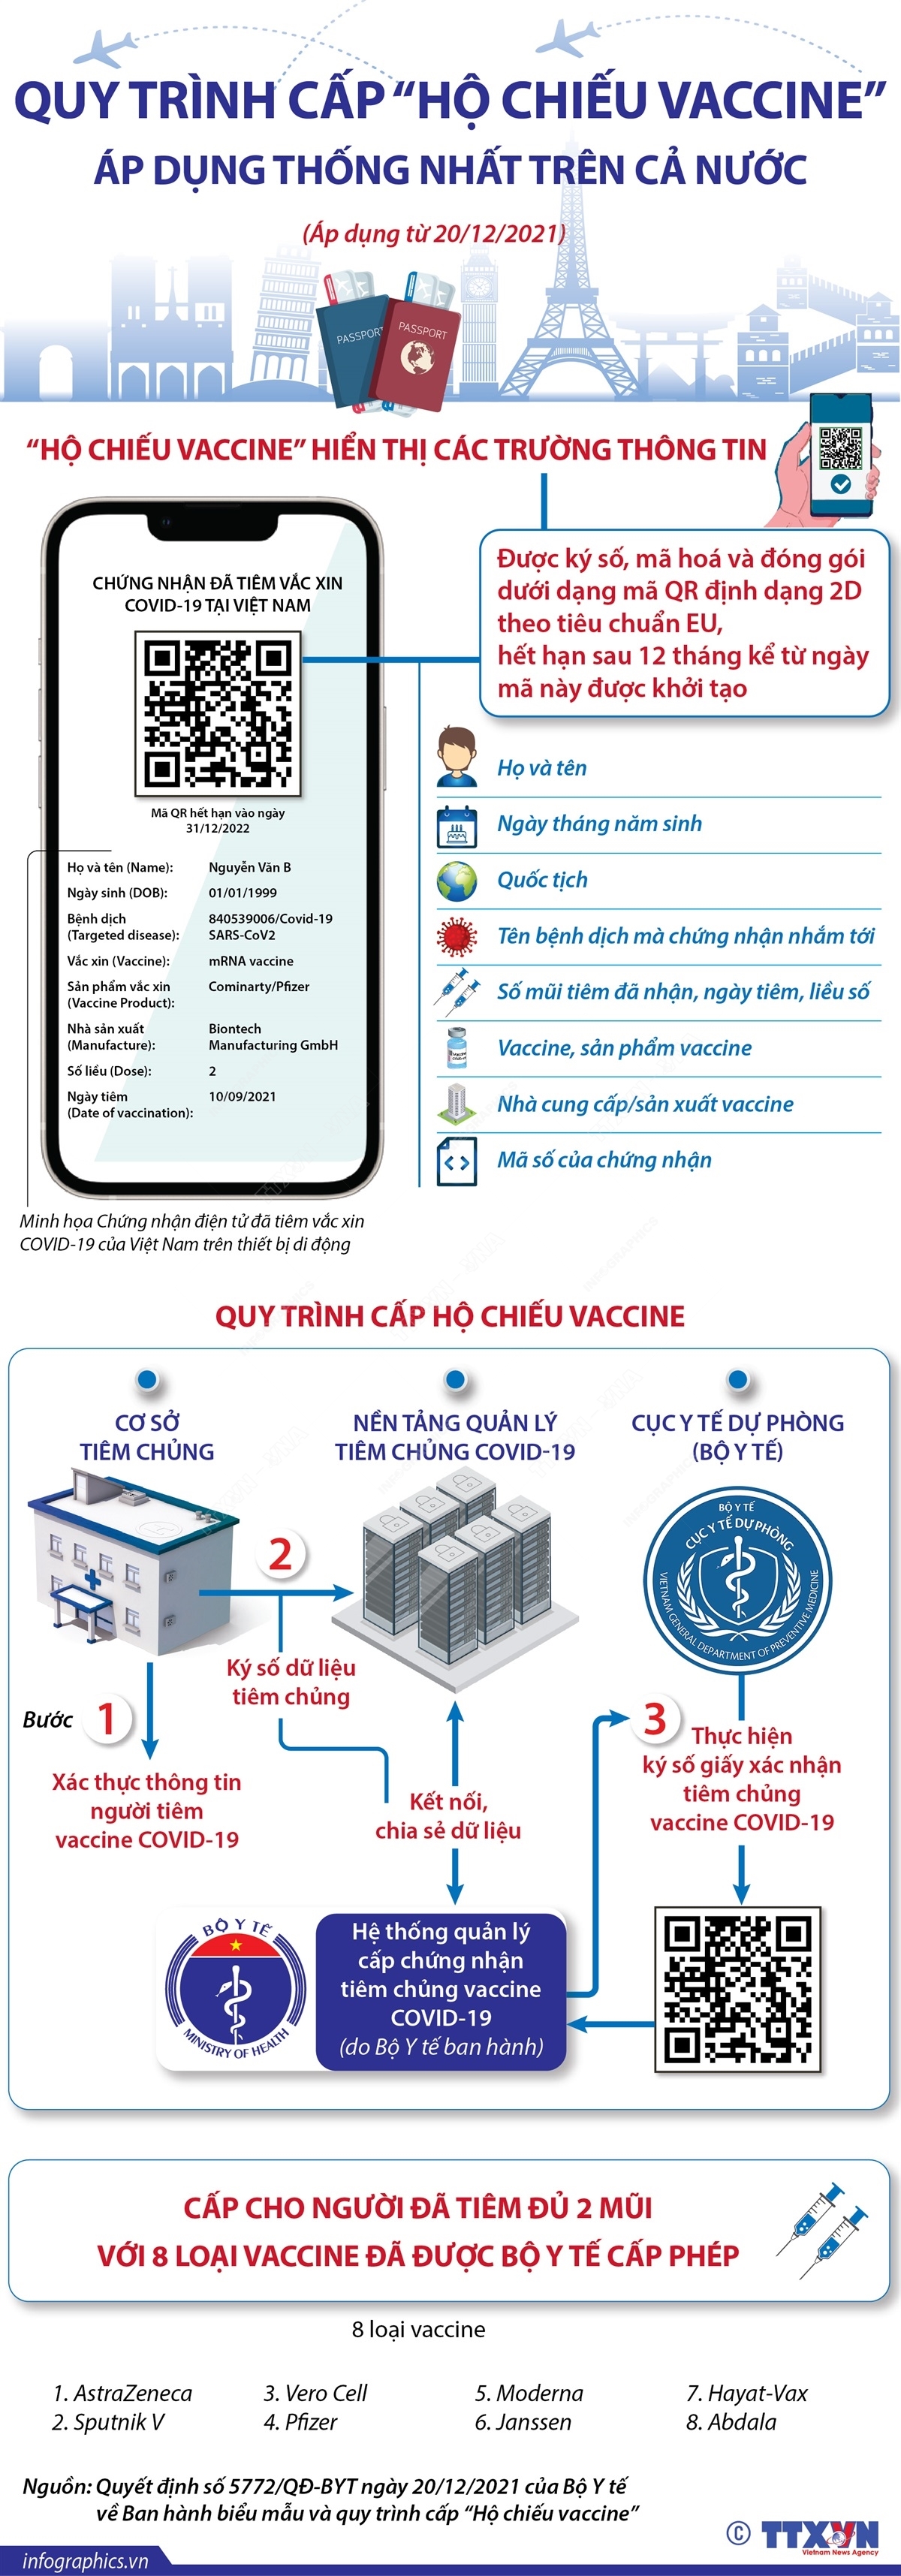 Quy trình cấp “Hộ chiếu vaccine” áp dụng thống nhất trên cả nước (từ 20/12/2021)